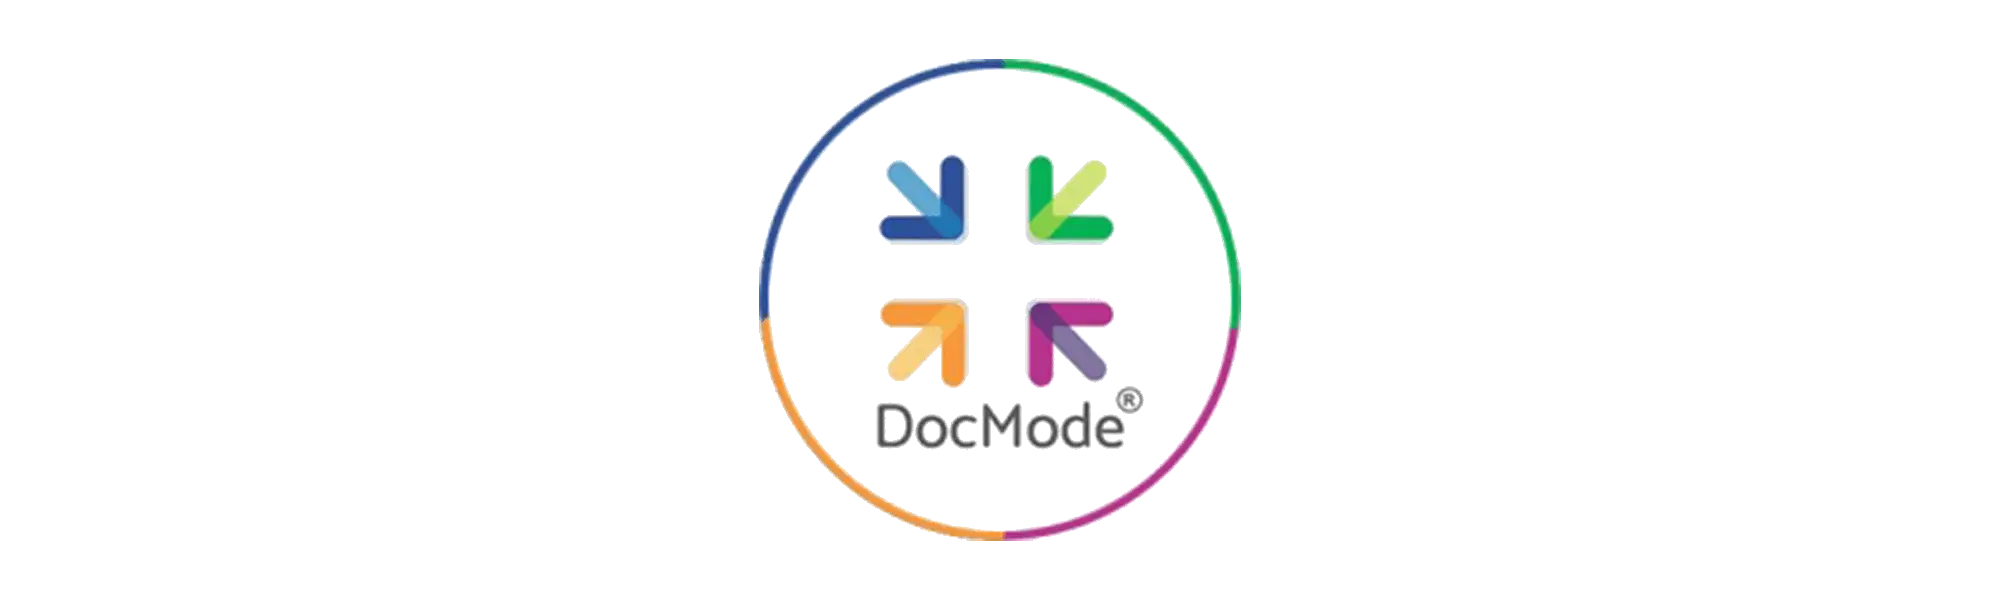 DocMode Health Technologies